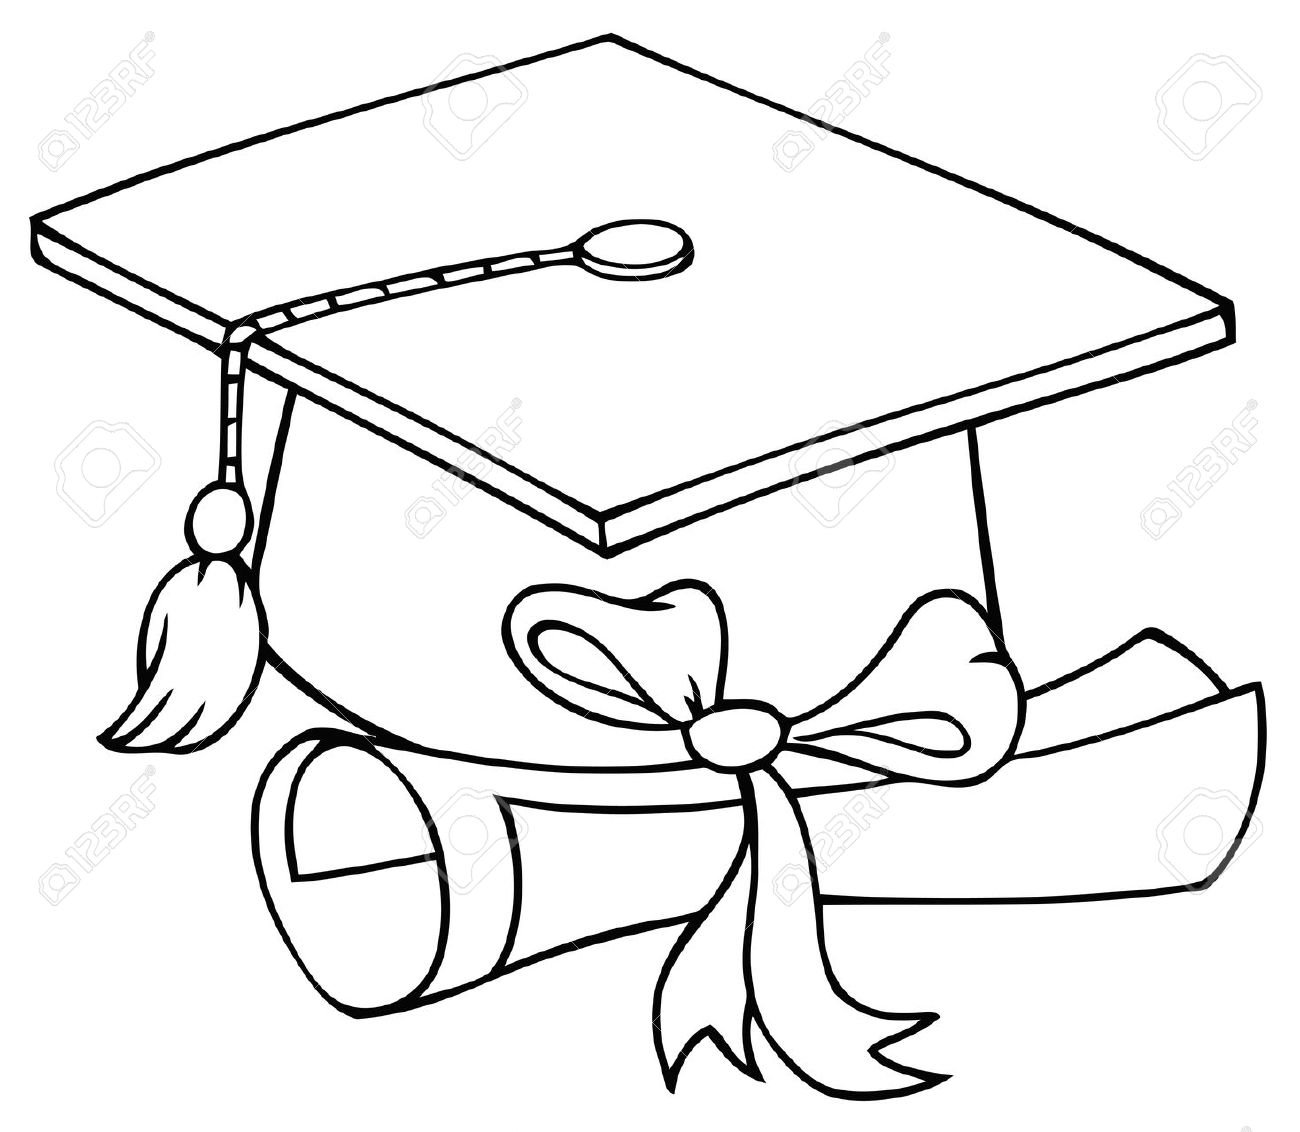 Graduation Cap with Diploma .